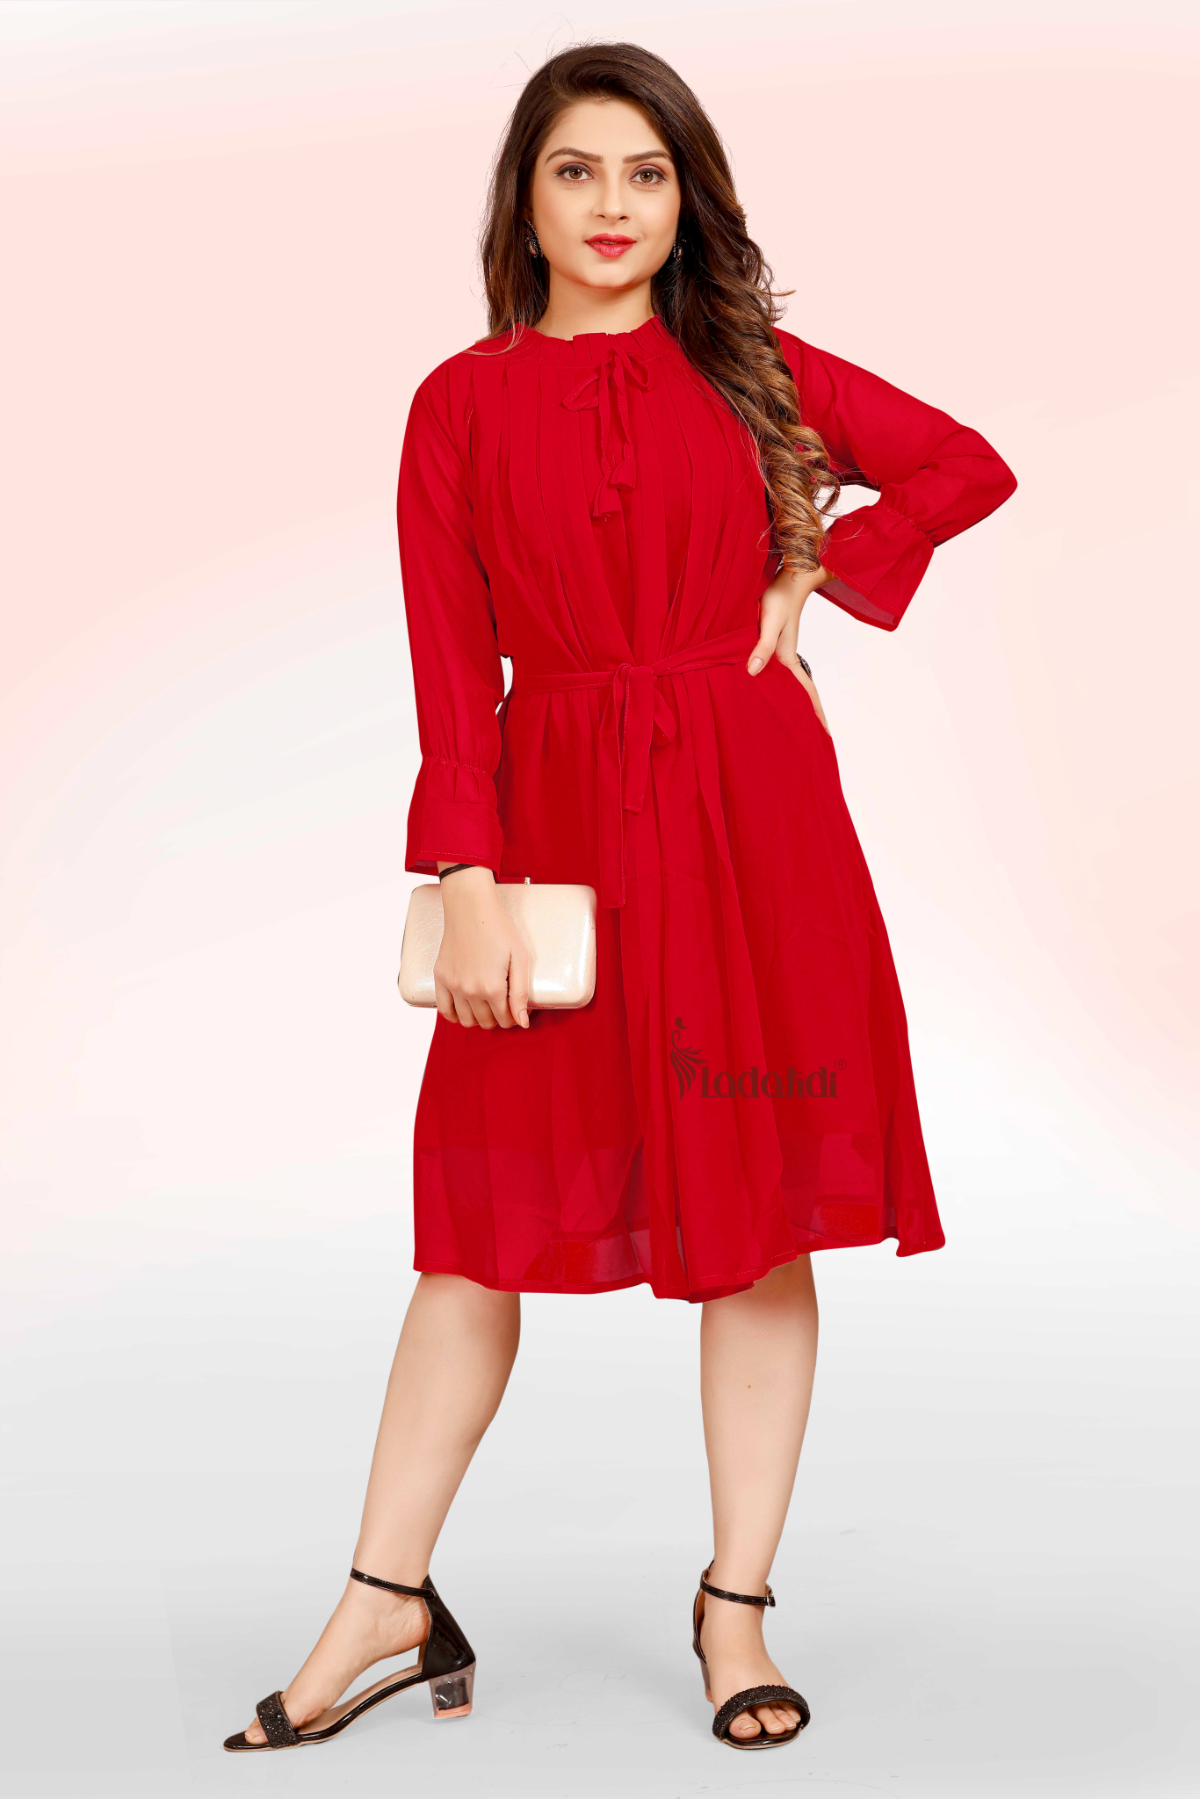 Stylish Ravishing Women's Red Colored Dress G4 - LADAKDI